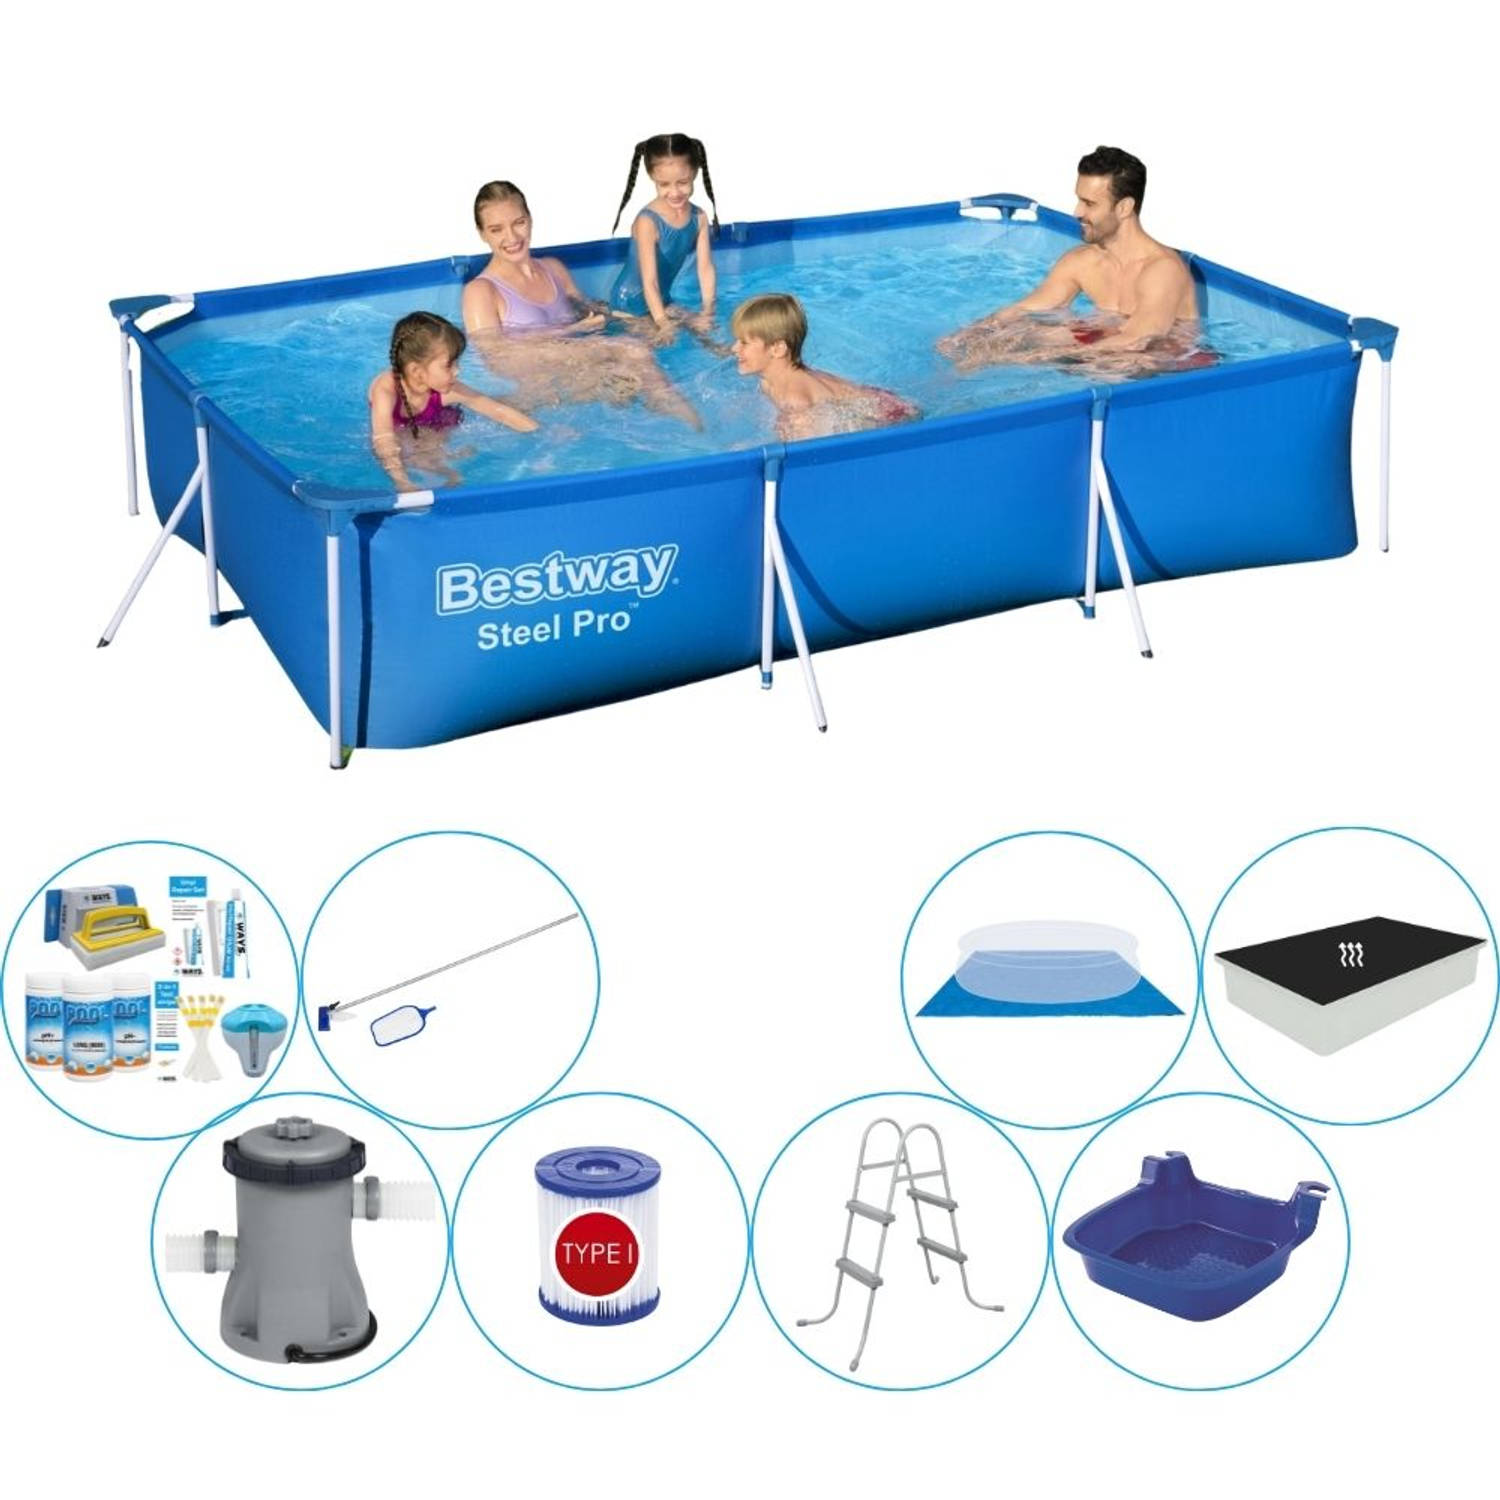 Bestway Steel Pro Rechthoekig Zwembad - 300 201 x 66 cm - Blauw - Inclusief Pomp - Voordeelpakket |